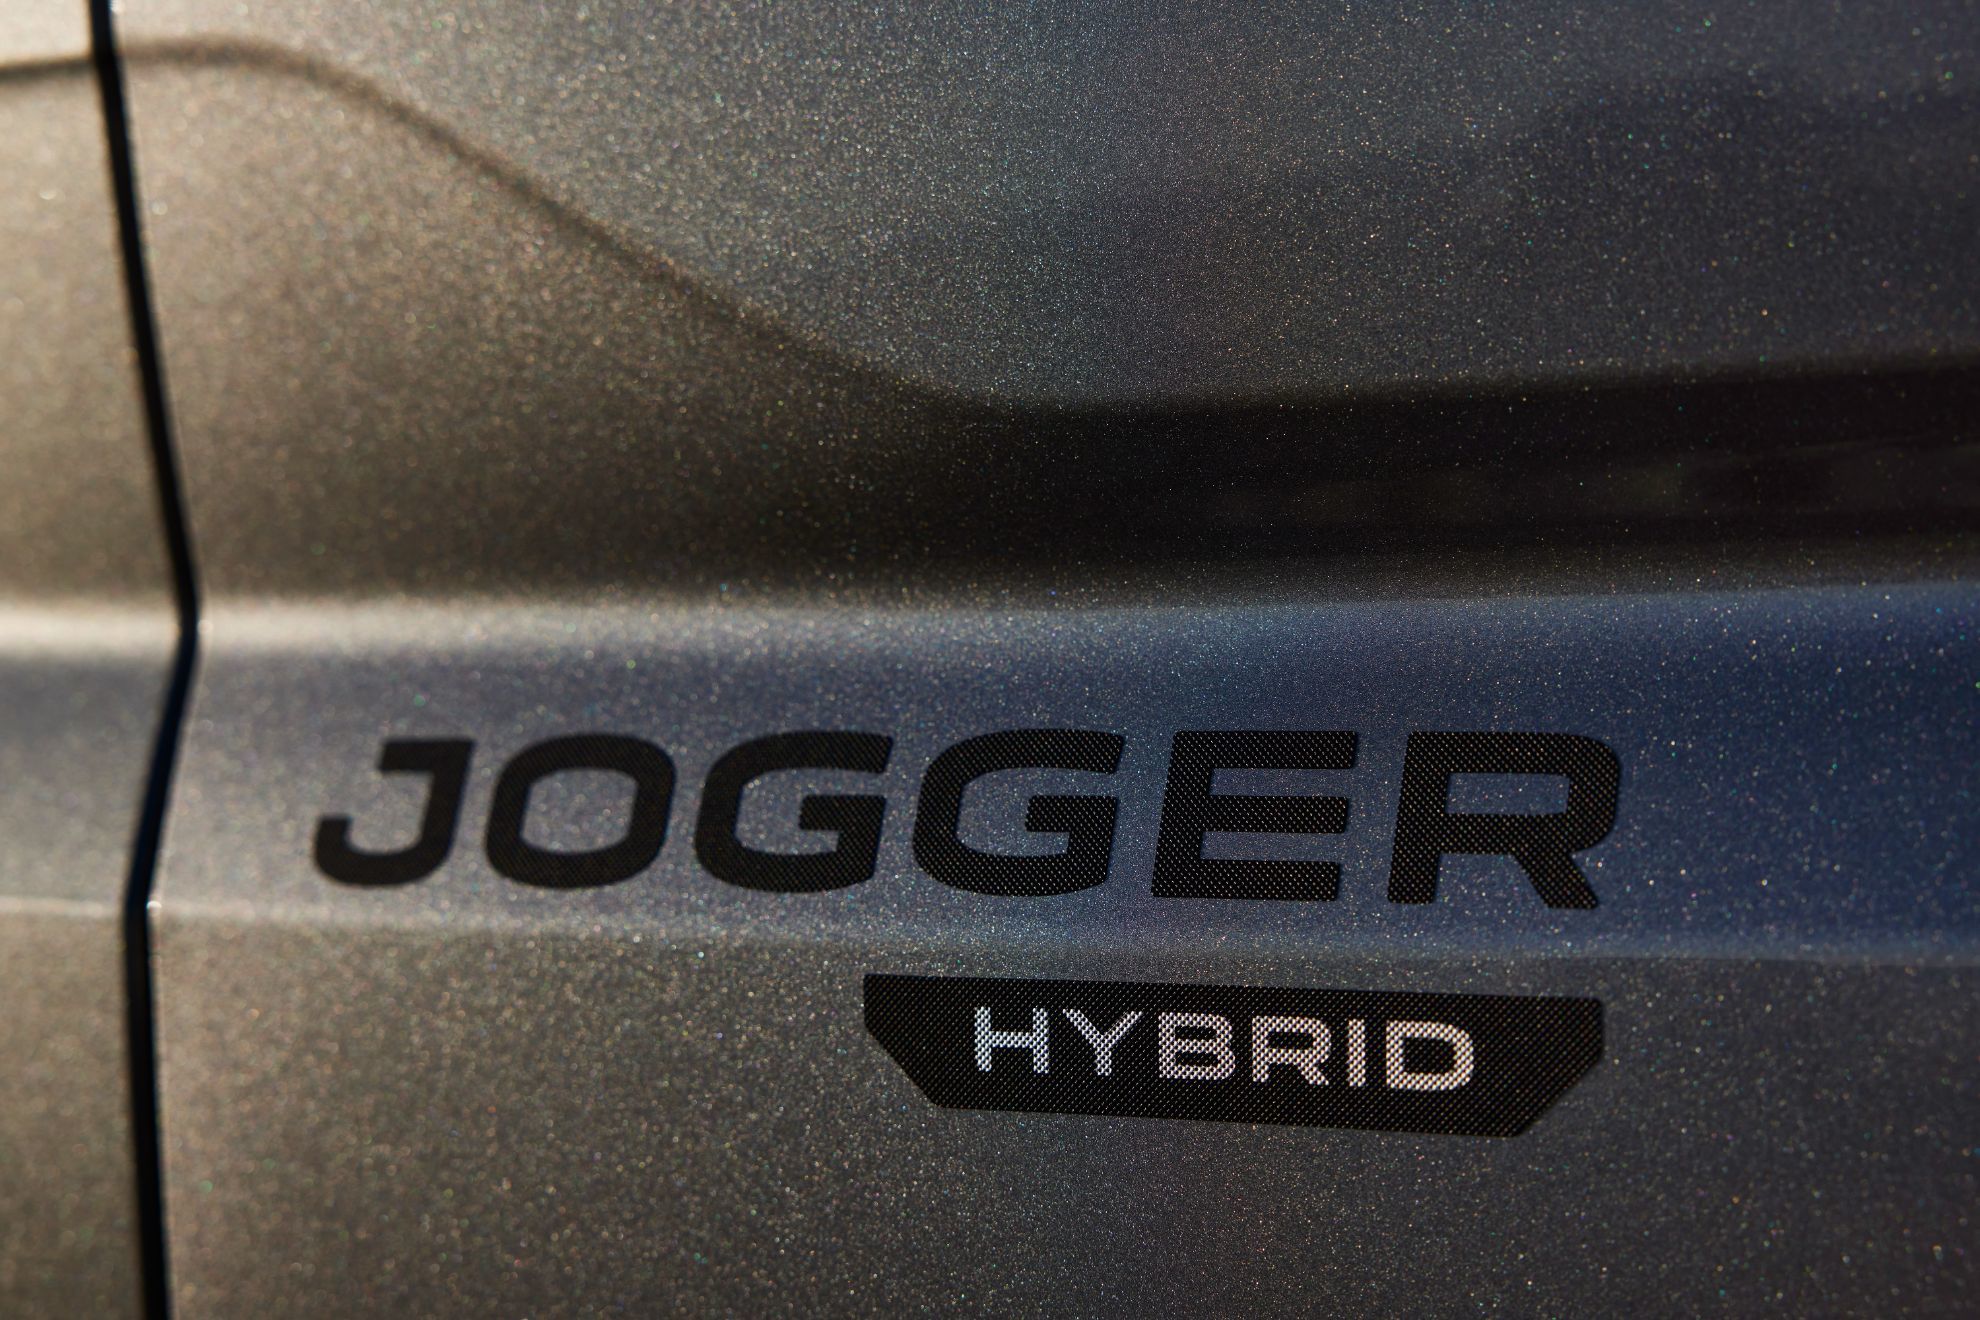 El Jogger Hybrid ofrece 140 caballos de potencia combinando el 1.6 gasolina y el motor elctrico.